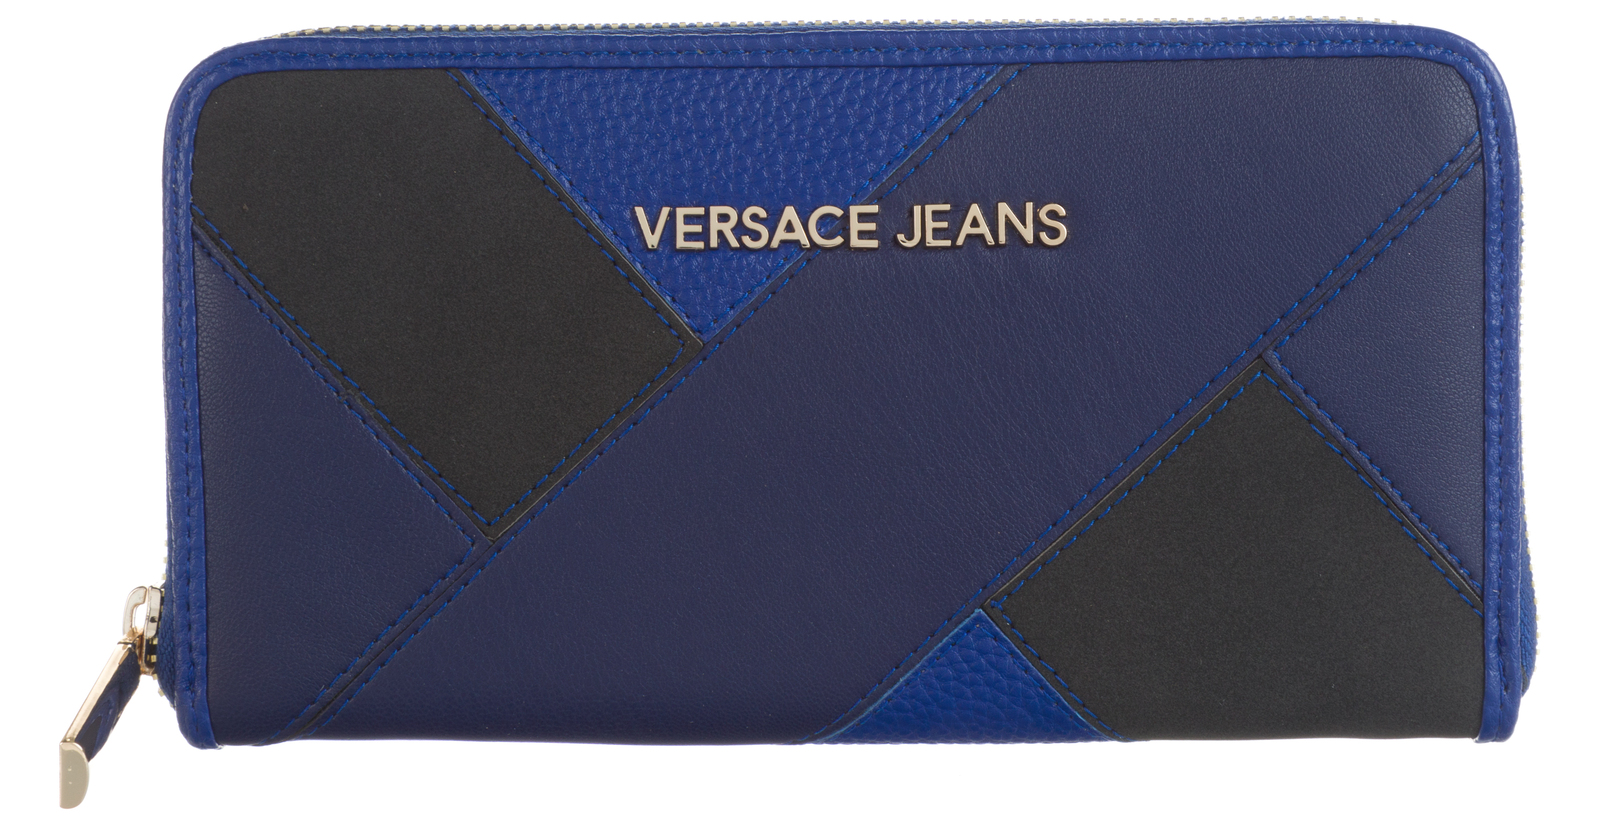 Versace Jeans Pénztárca UNI, Kék 2017 fotója